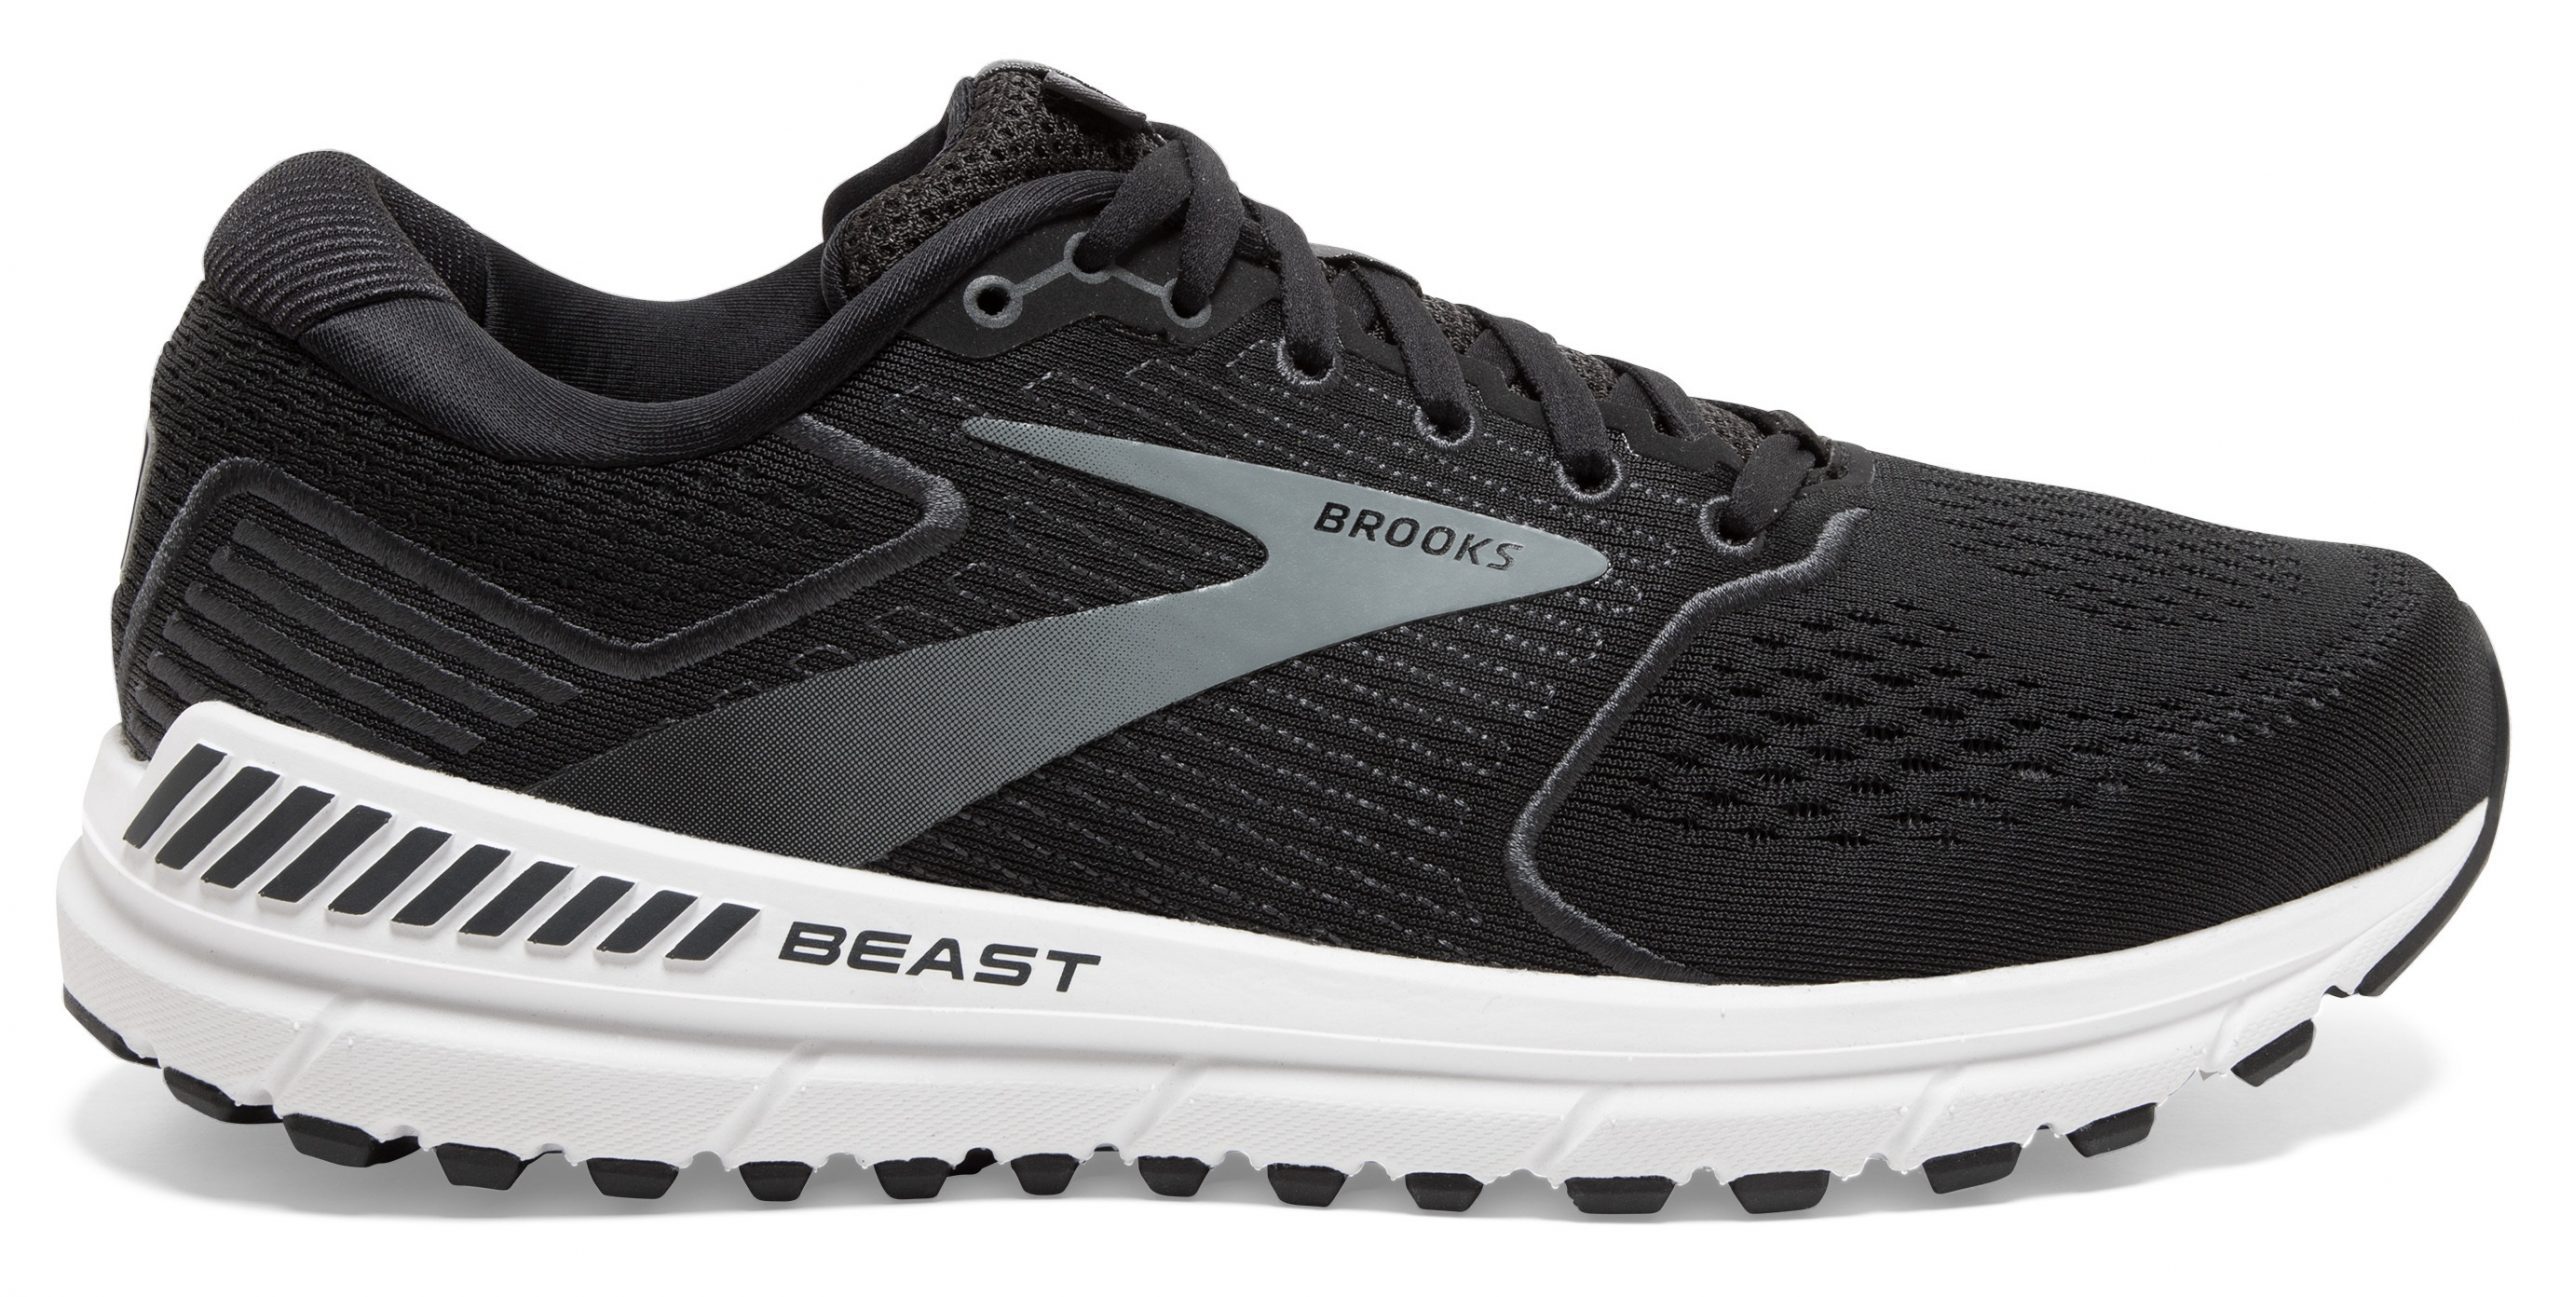 the beast running shoe